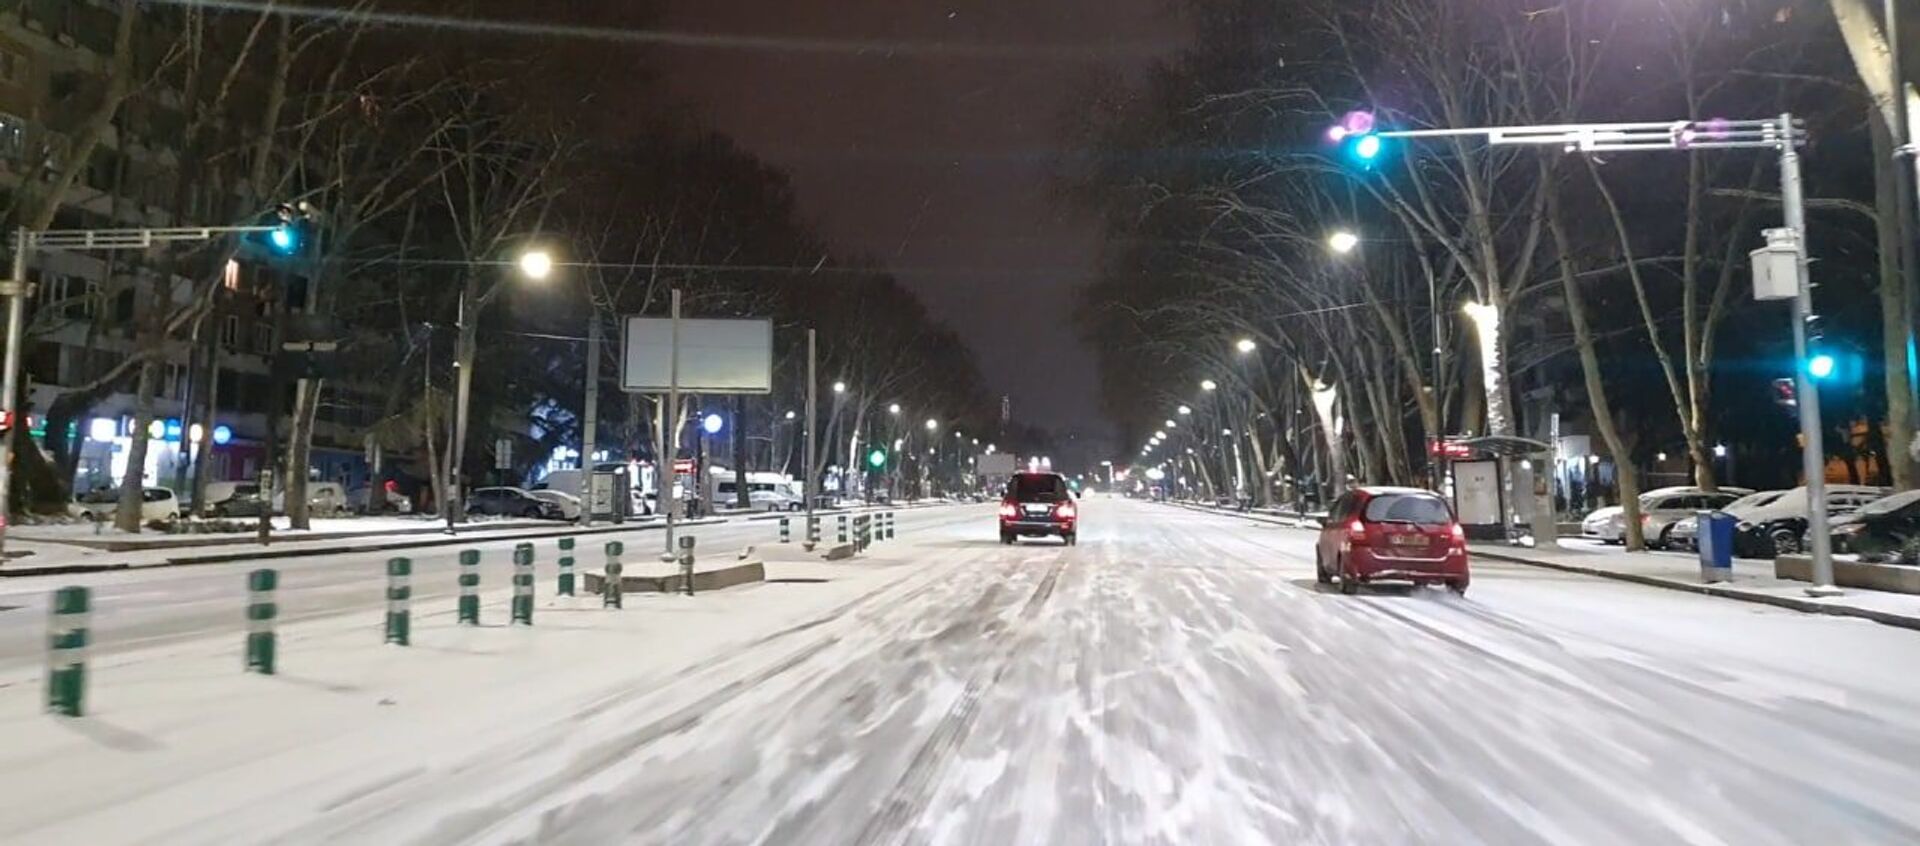 На дорогах Тбилиси снег и гололёд: придётся ездить осторожно - видео - Sputnik Грузия, 1920, 25.02.2021